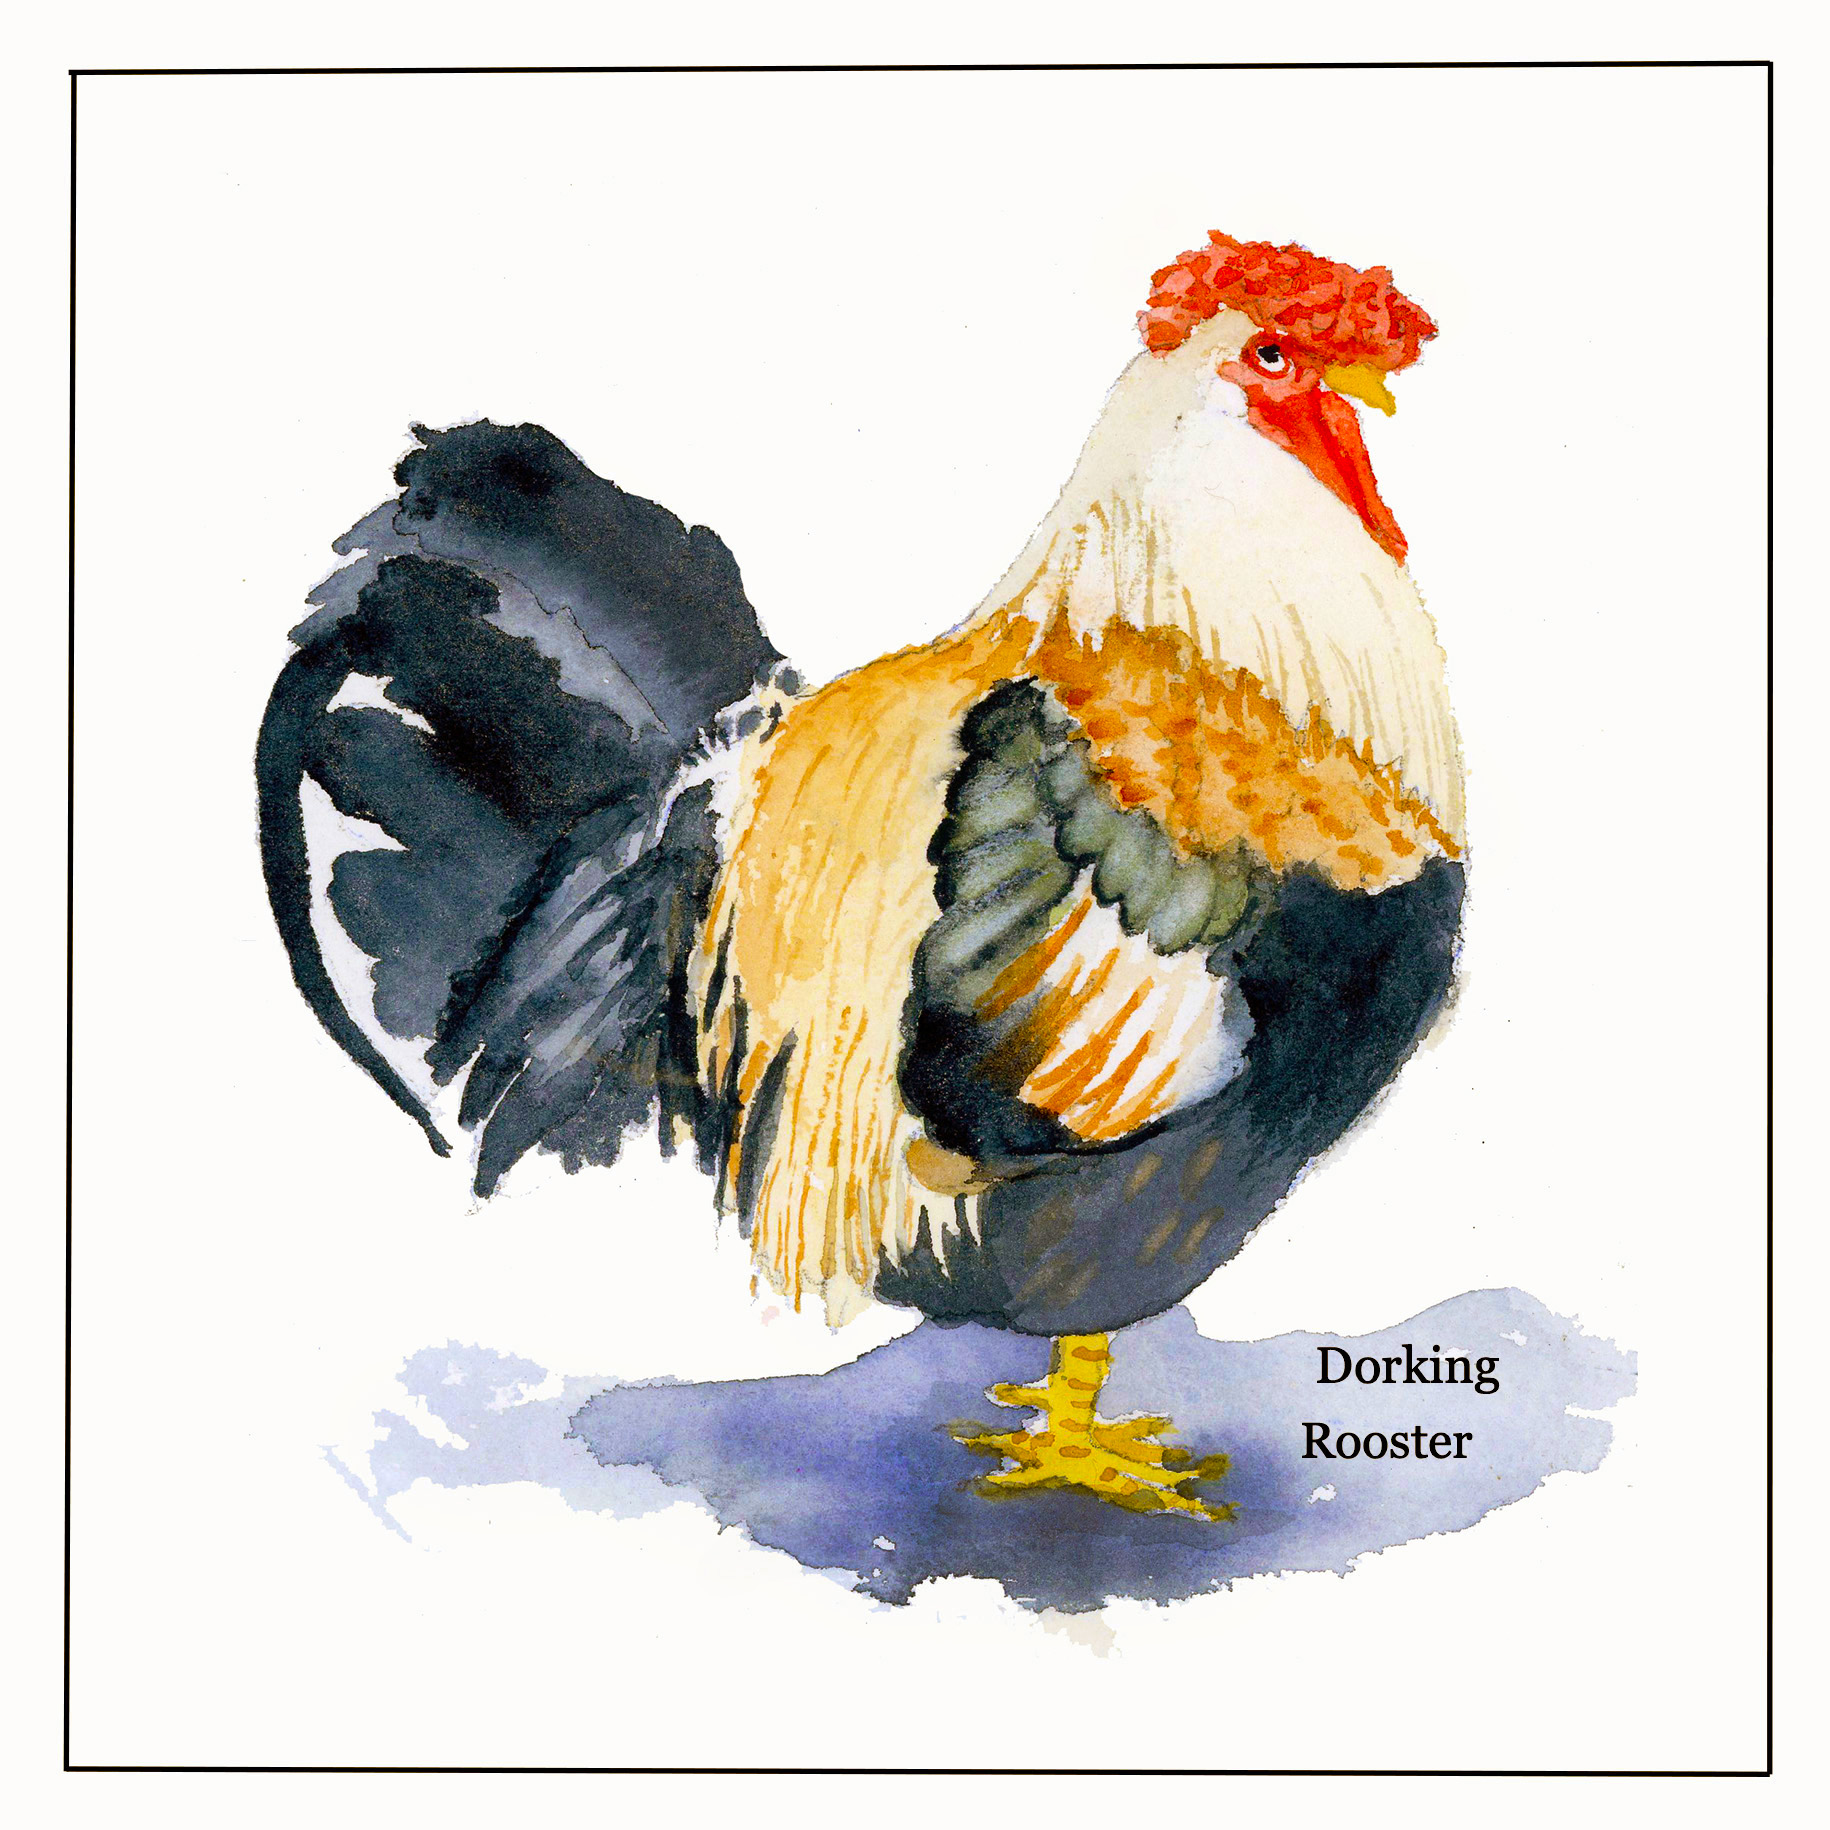 Dorking Rooster